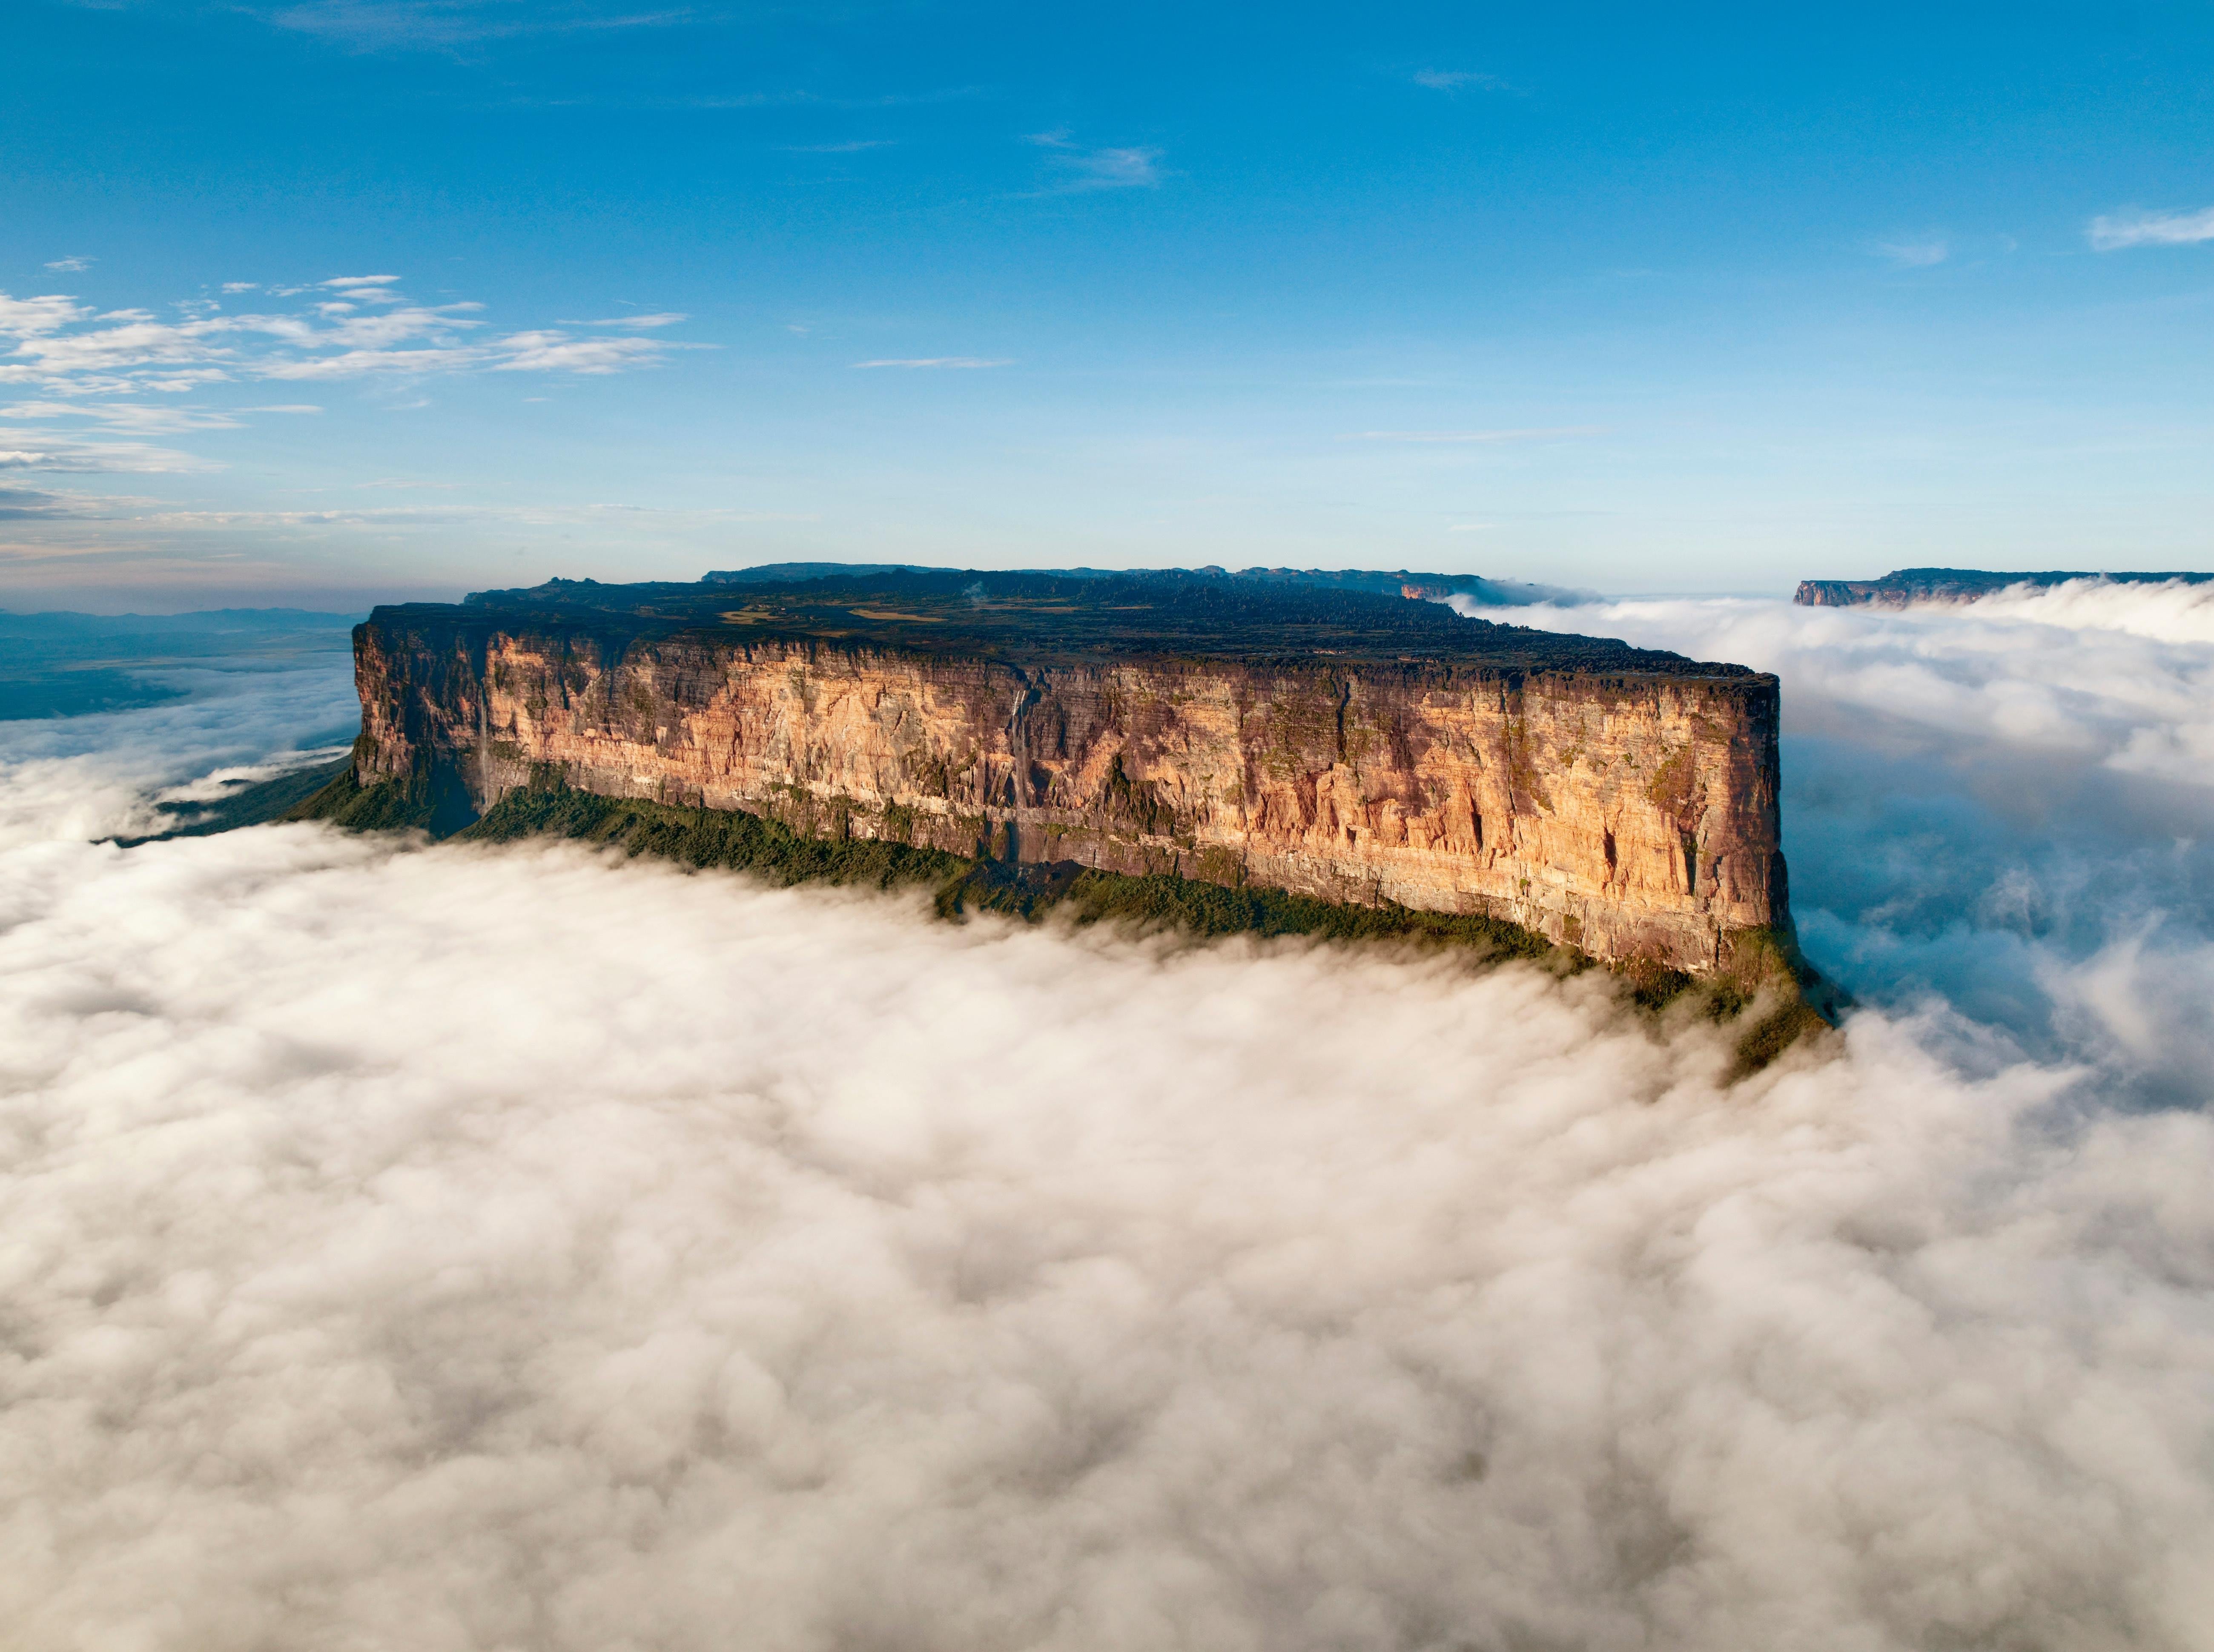 Самый высокий водопад гвианском плоскогорье. Город Рорайма Венесуэла. Столовая гора Рорайма. Гора Рорайма, Южная Америка. Столовые горы Рорайма Венесуэлы.